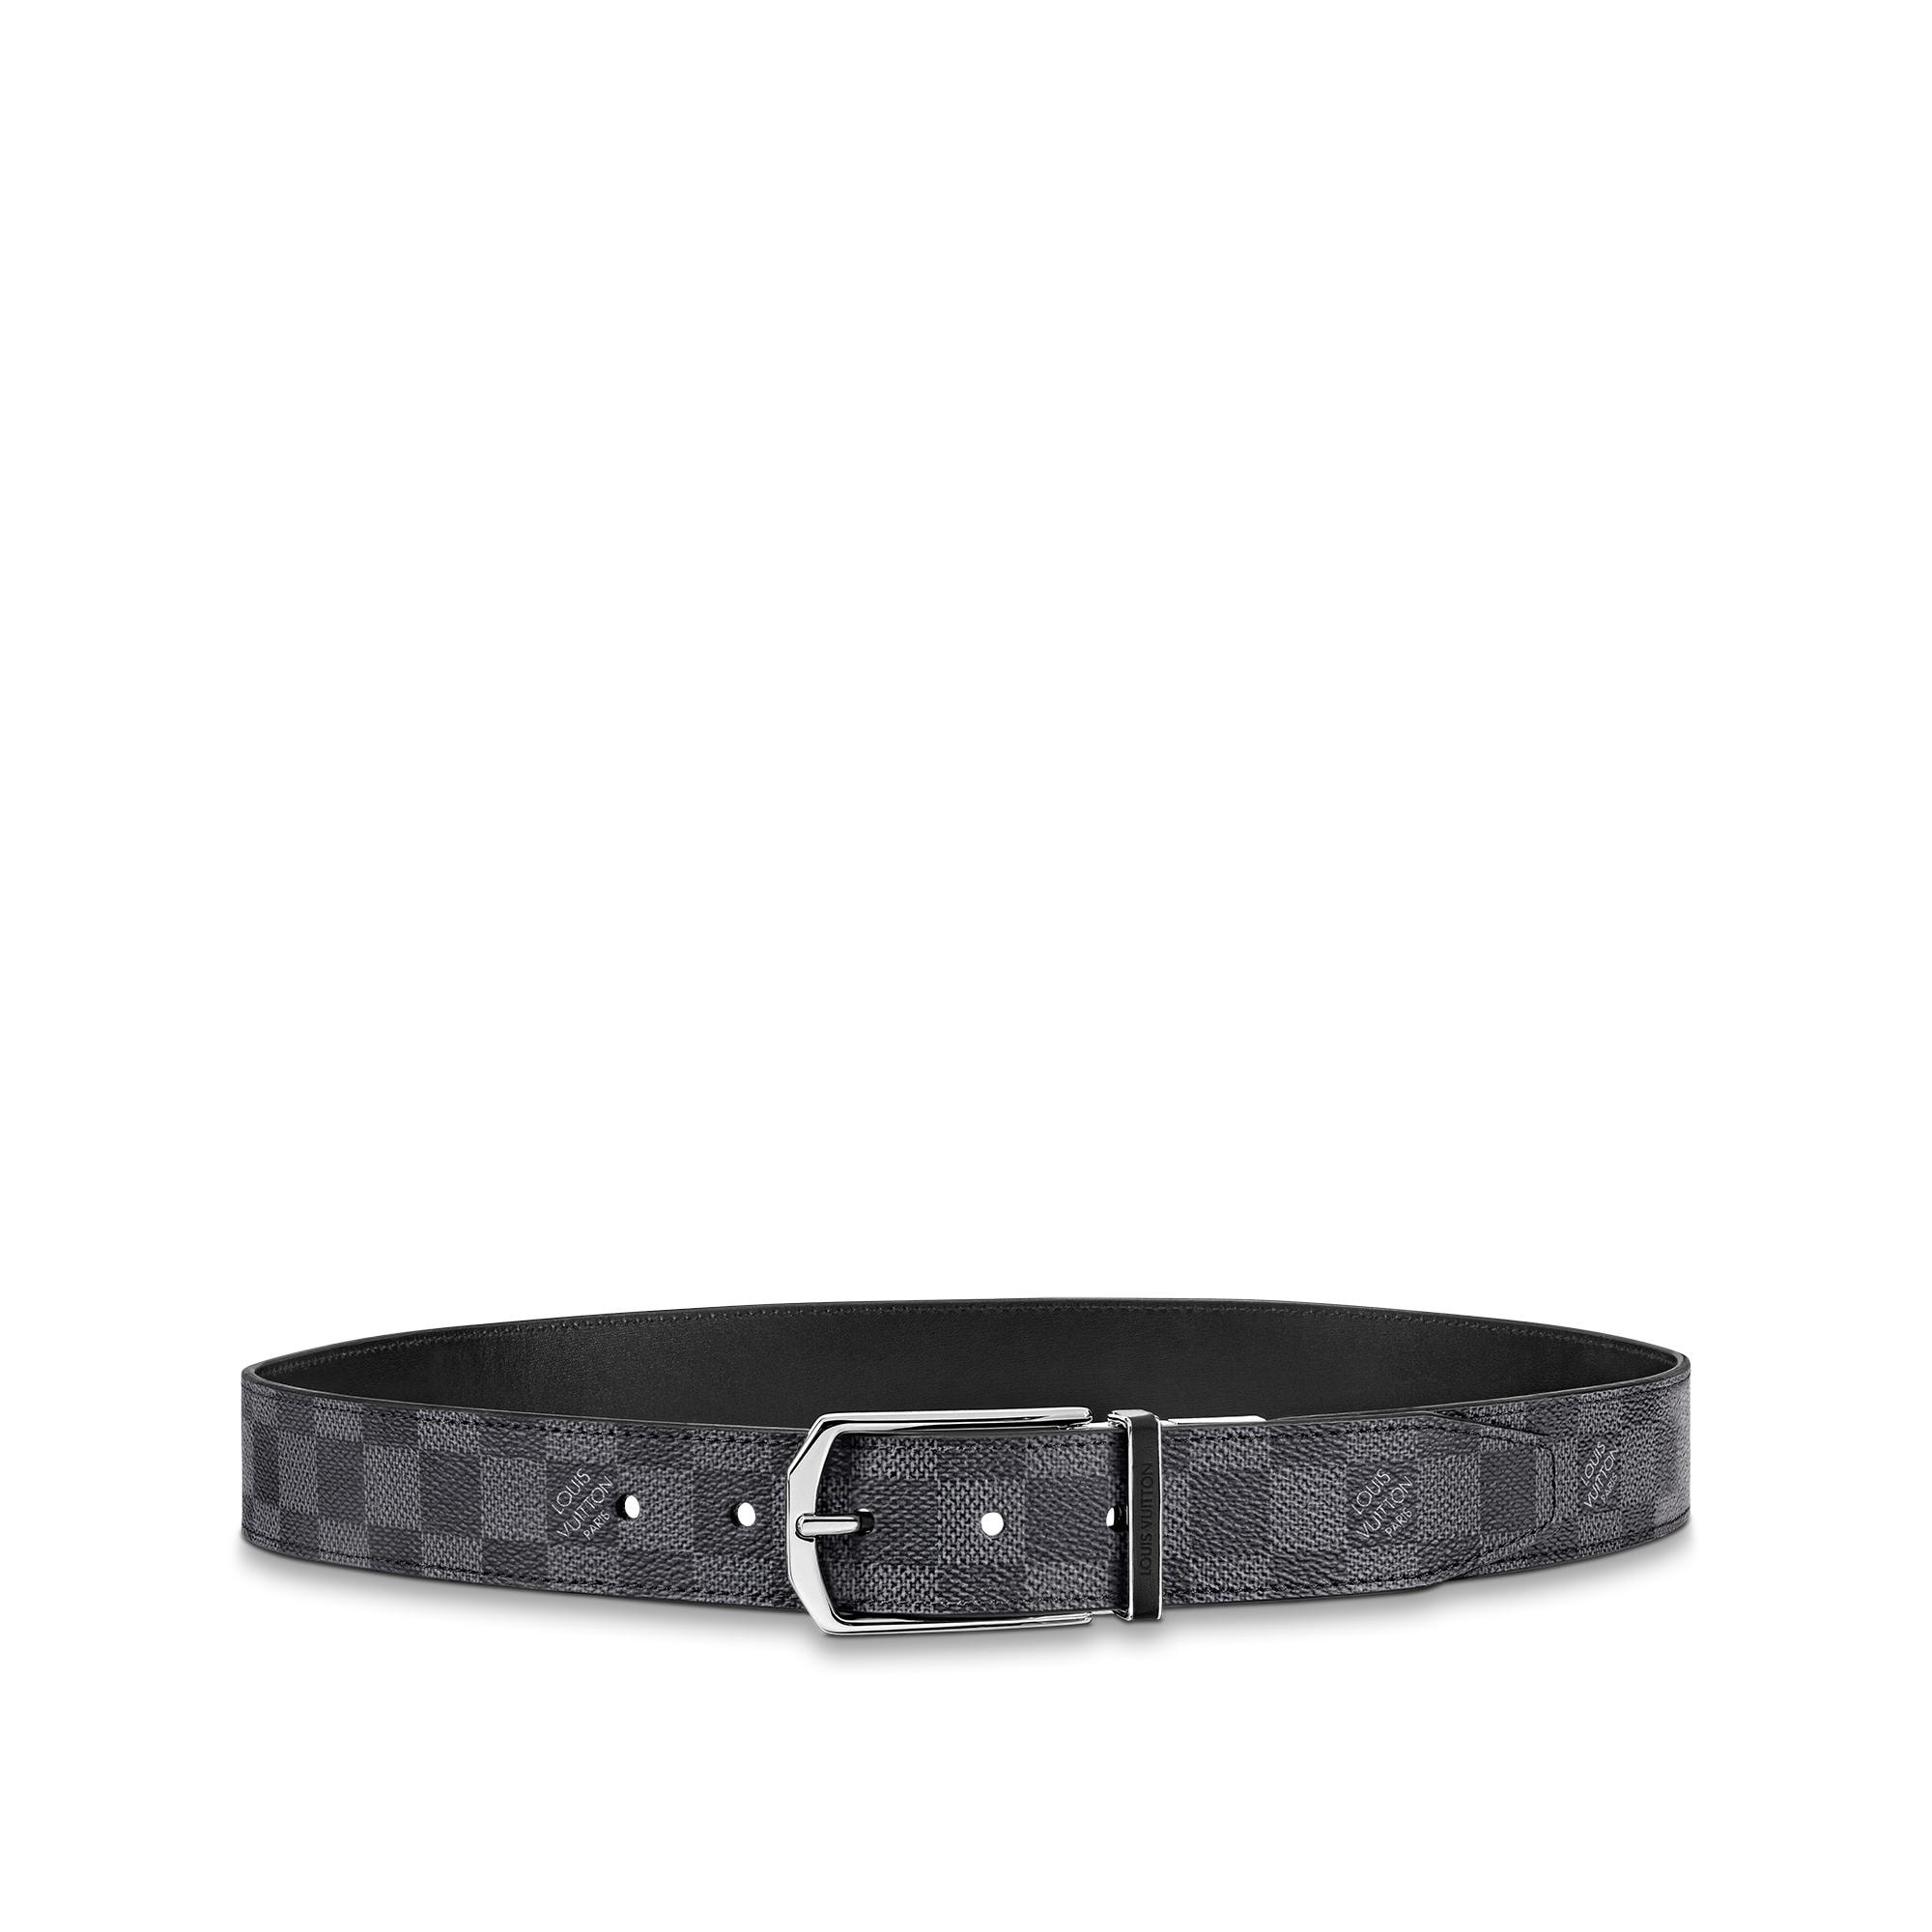 Louis Vuitton LV Shadow 40mm Reversible Belt Black Leather. Size 85 cm